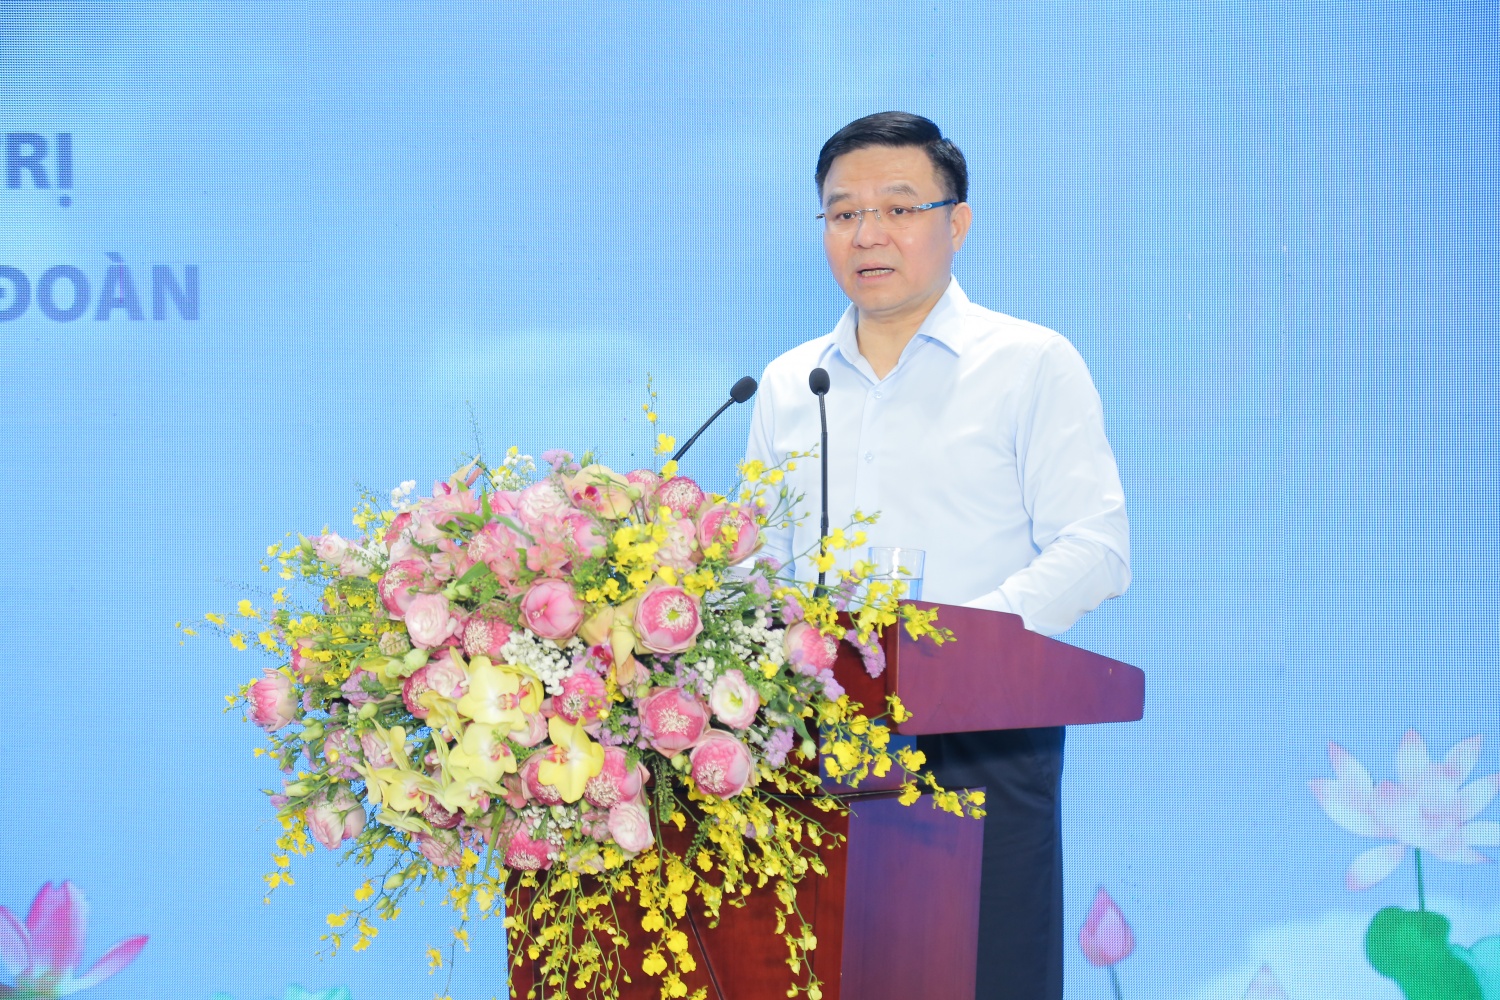 Đảng ủy Tập đoàn Dầu khí Quốc gia Việt Nam sơ kết 3 năm thực hiện Kết luận 01 của Bộ Chính trị